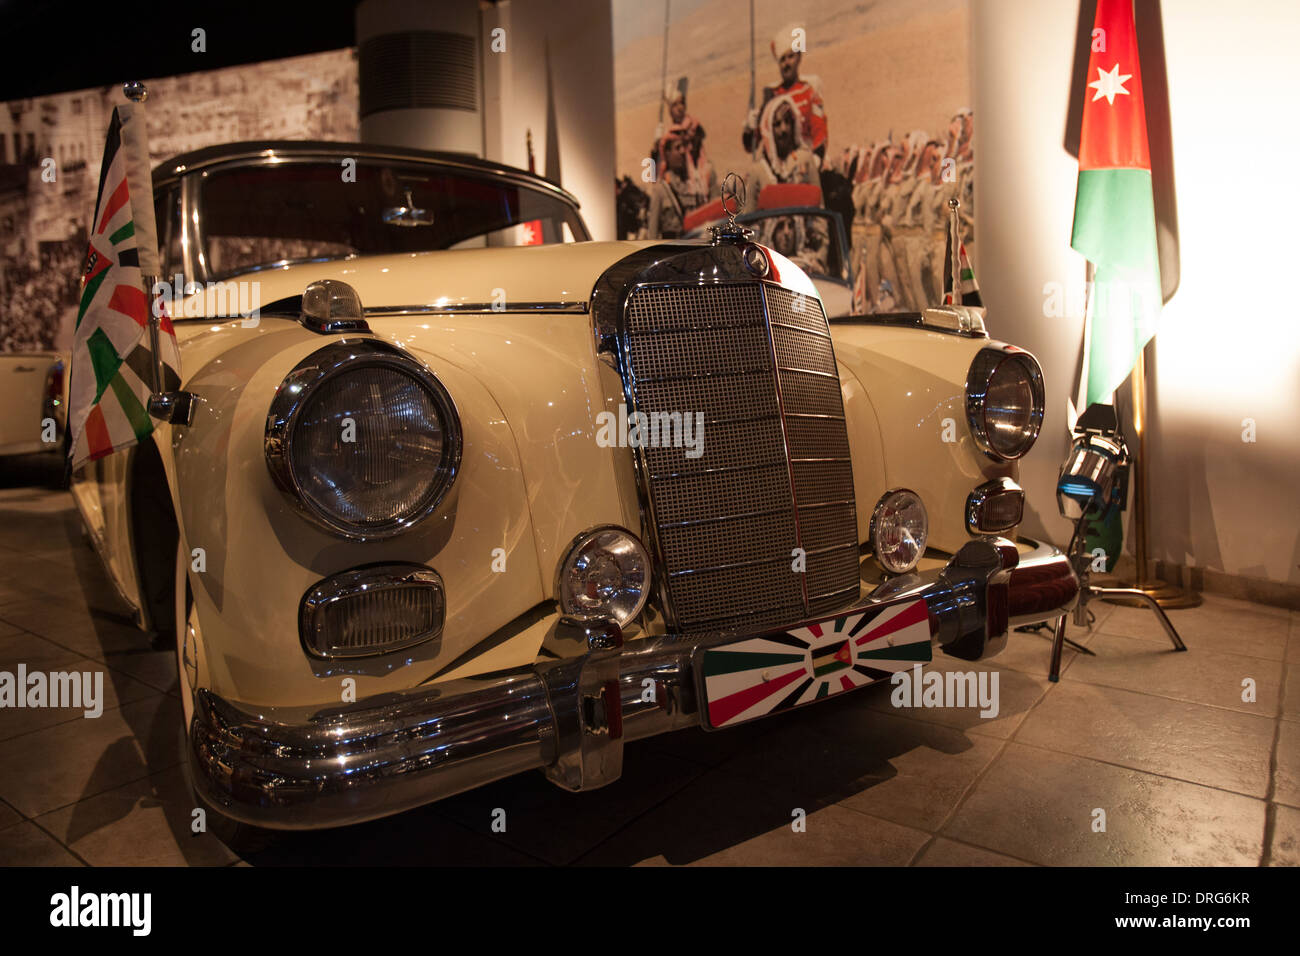 Une voiture de luxe utilisée par le roi de Jordanie exposée au musée de l'automobile royale dans le parc national d'Al Hussein. Amman Jordanie Banque D'Images